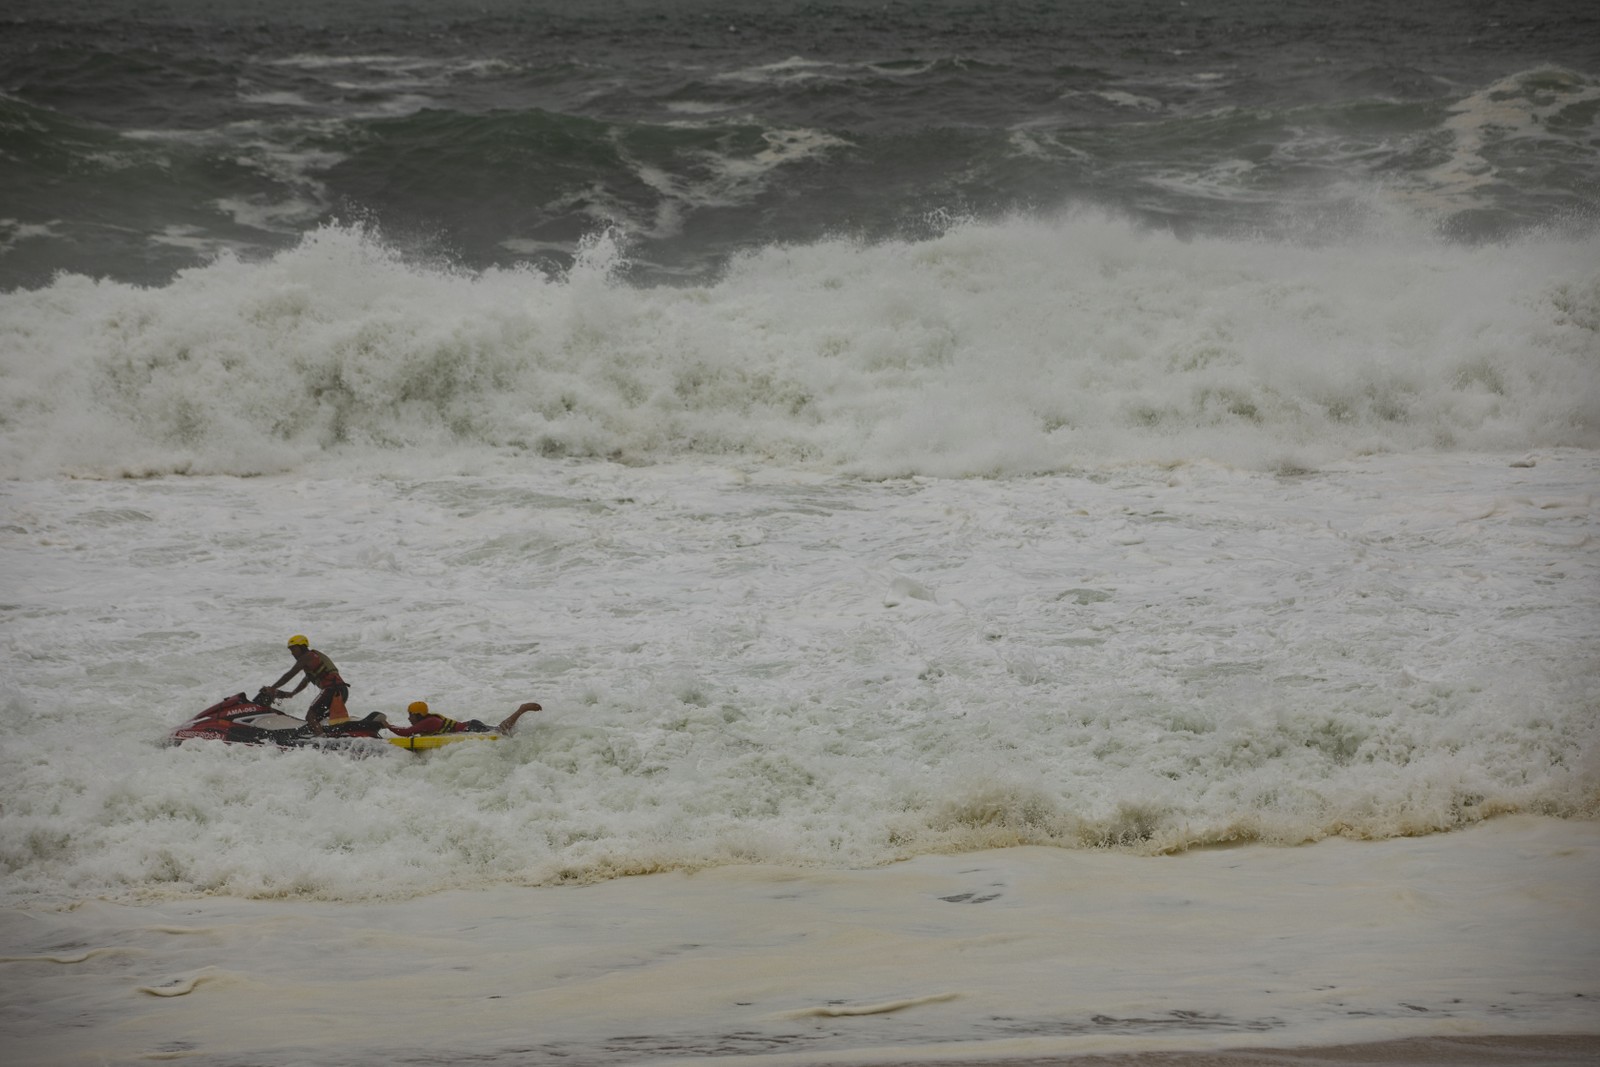 Bombeiros praticam treinamento na Praia de Itacoatiara durante a ressaca  — Foto: Ana Branco